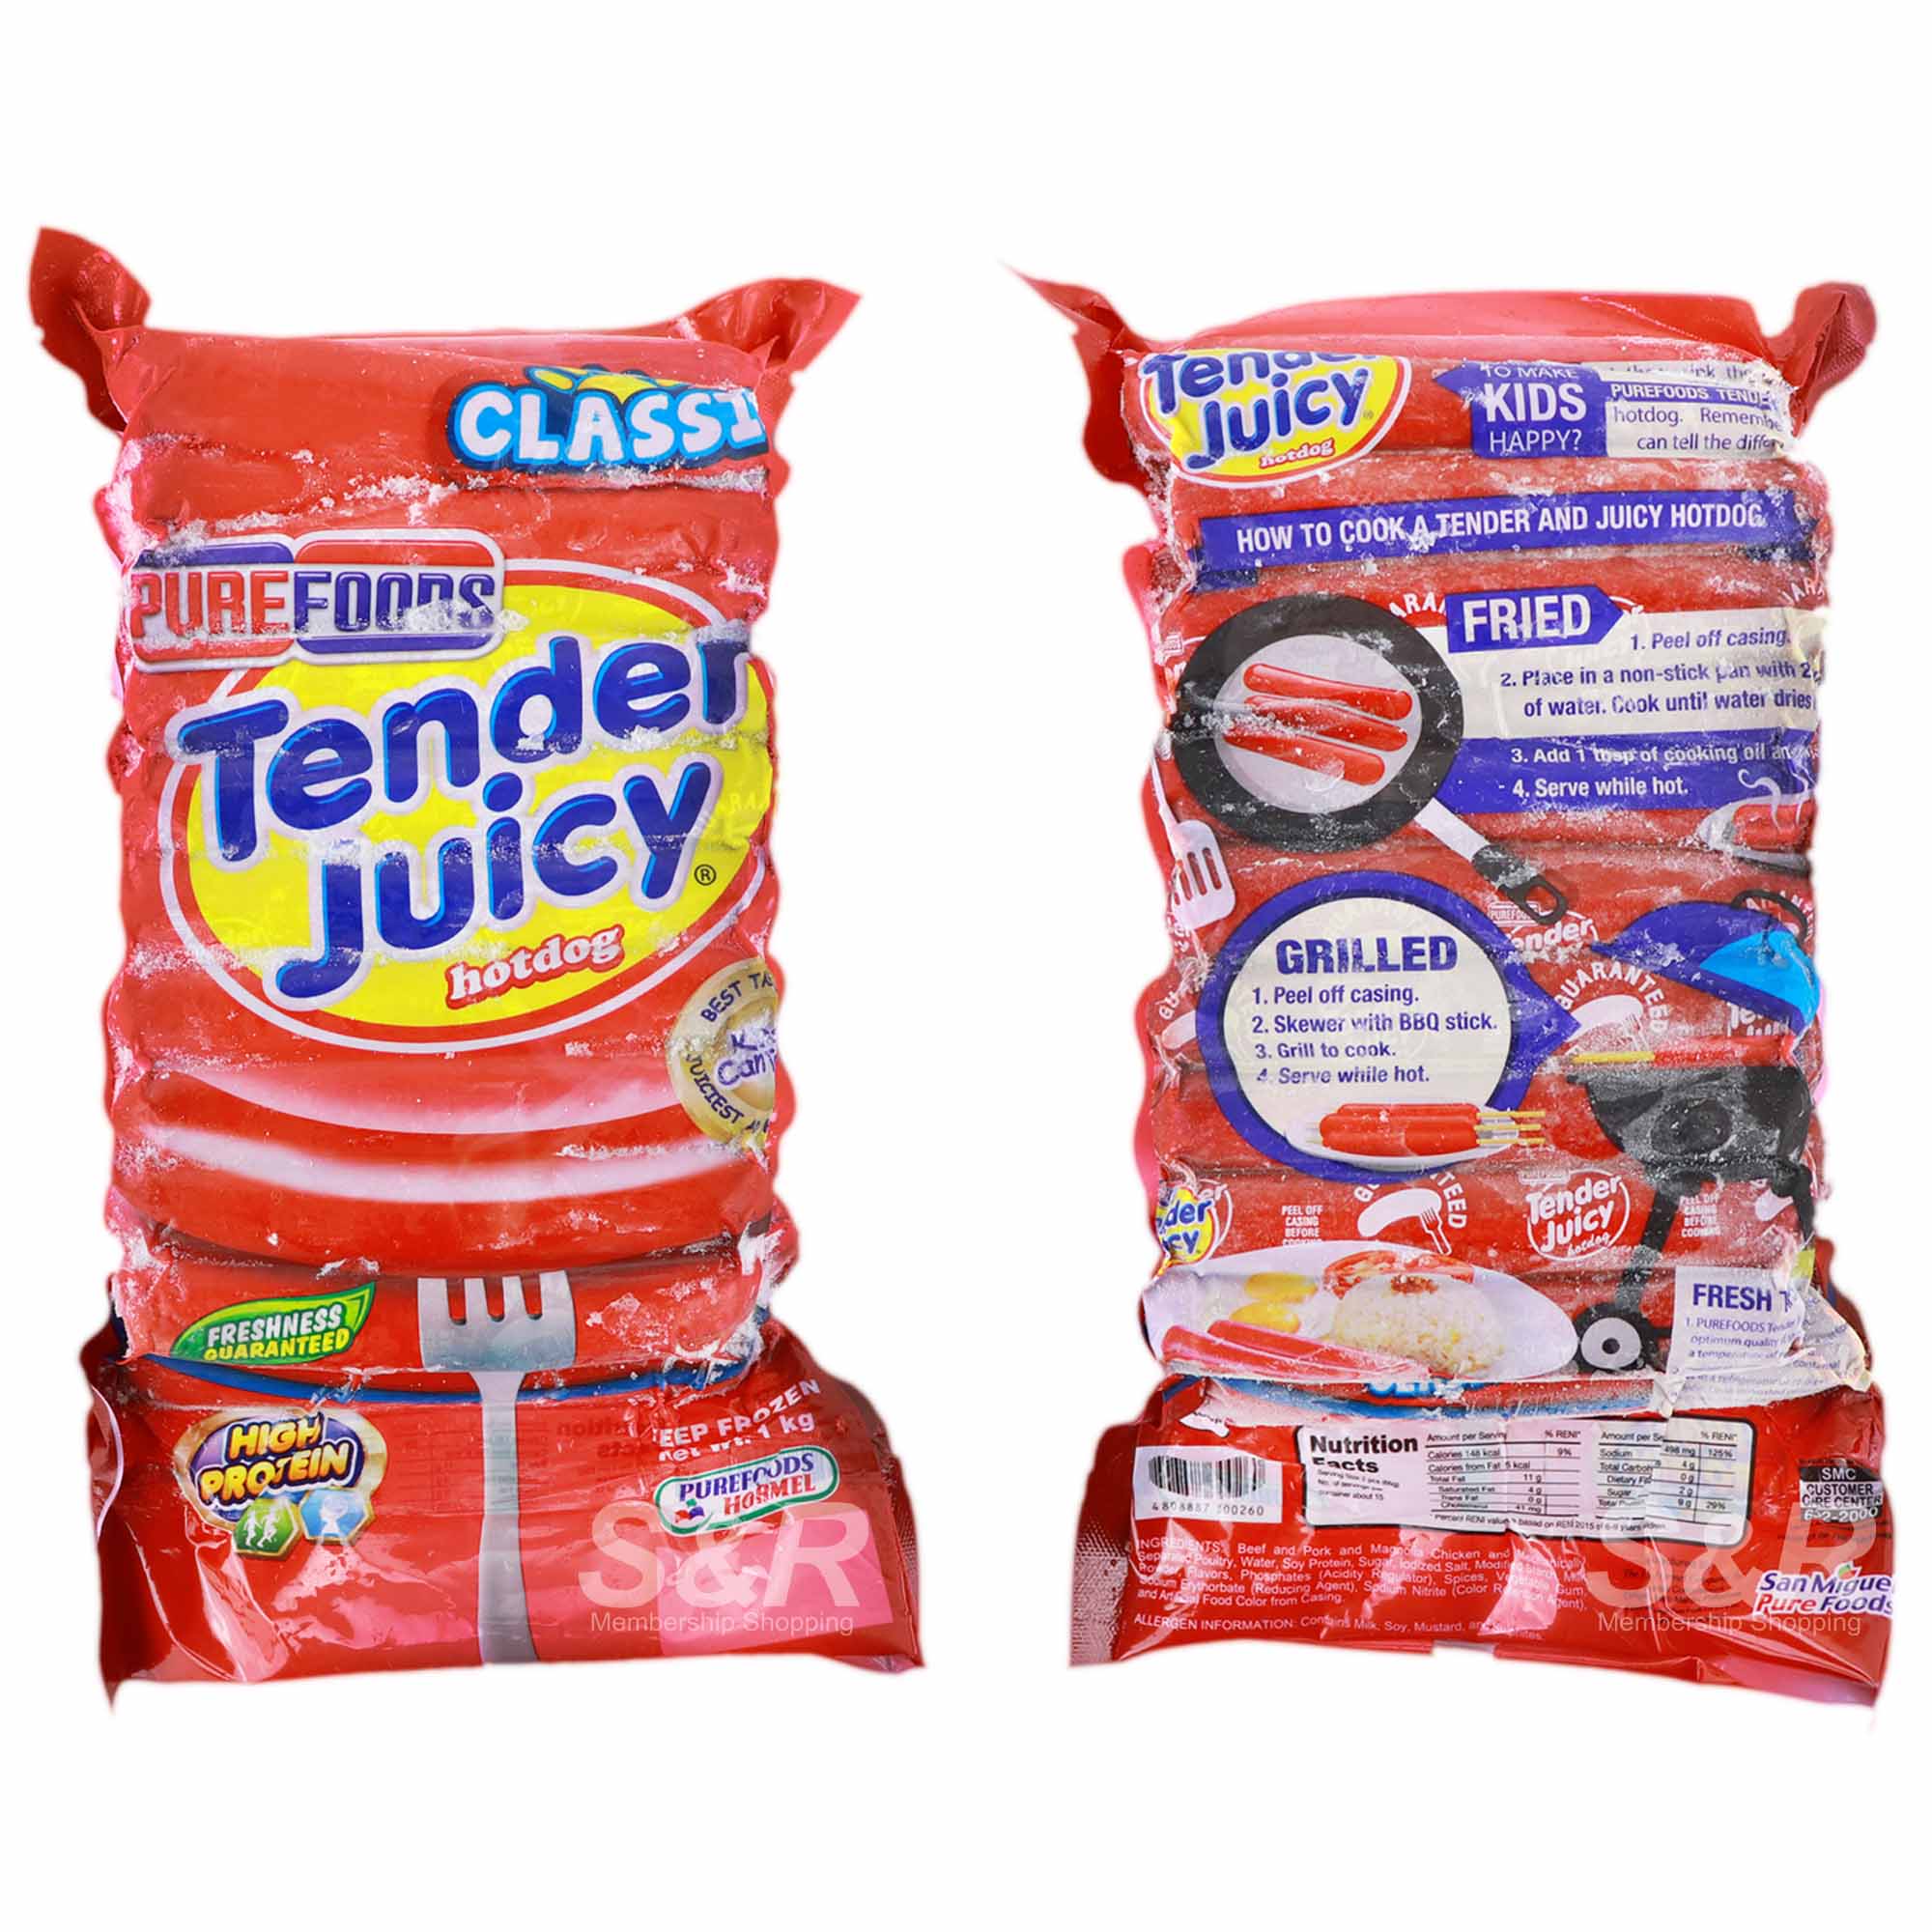 Tender Juicy